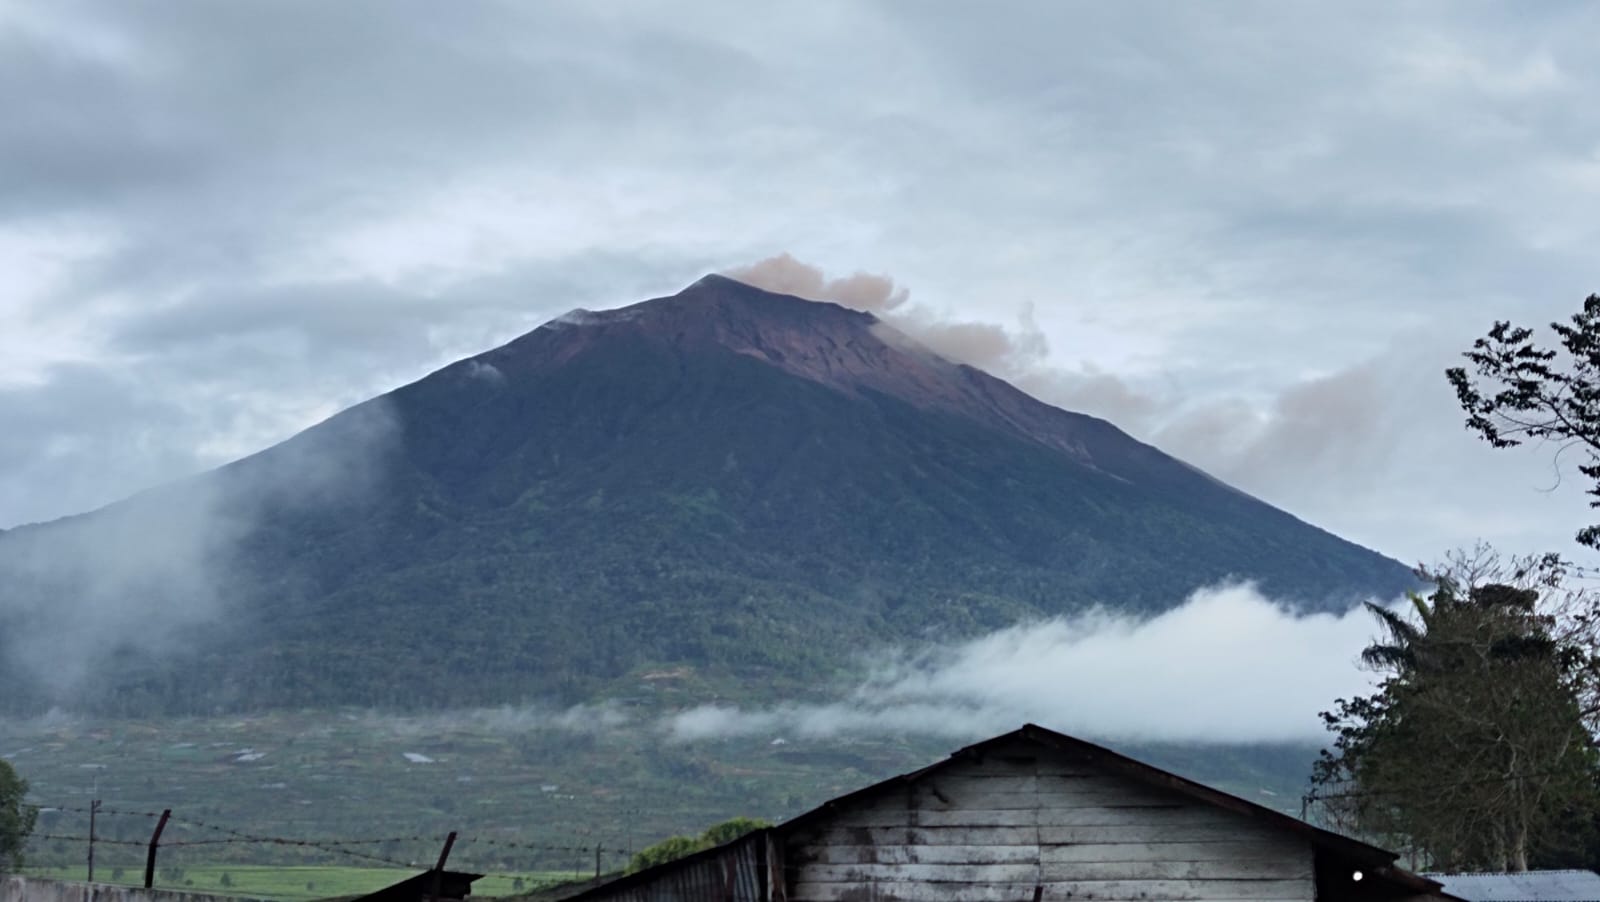 Gunung Kerinci Hari Kembali Erupsi, Puluhan Hektare Lahan Kena Abu Vulkanik